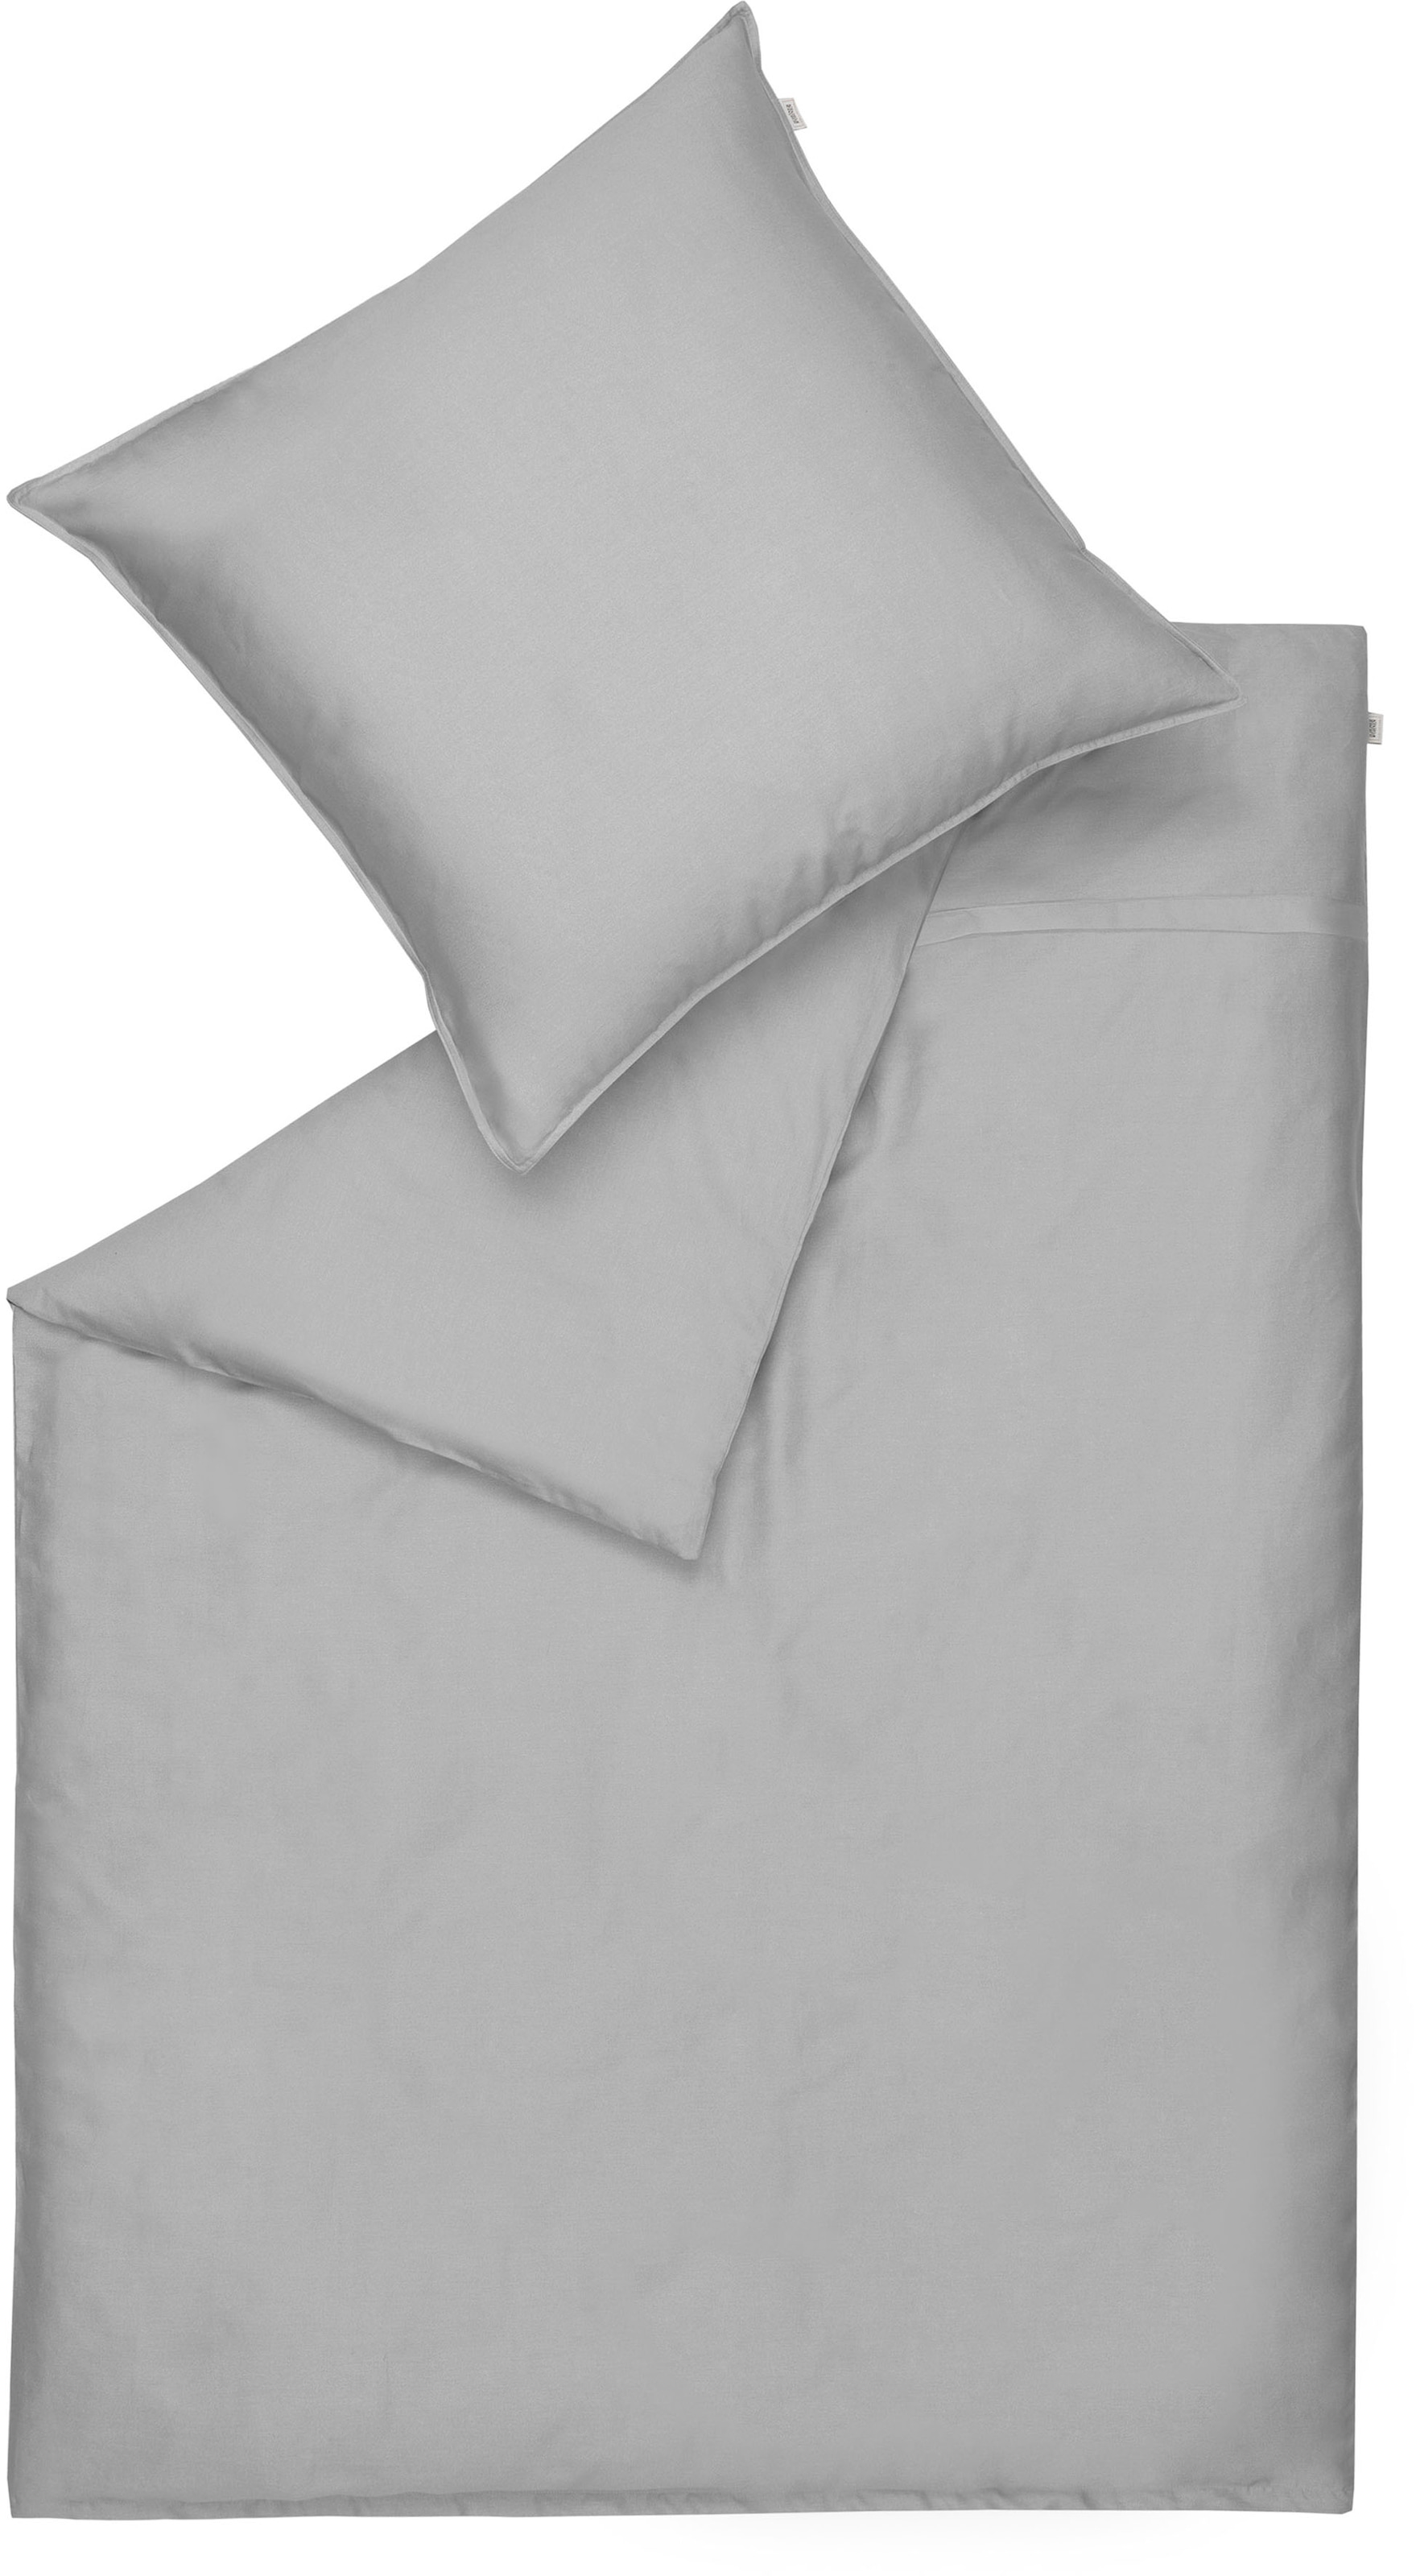 SCHÖNER WOHNEN-Kollektion Bettwäsche "Pure in Gr. 135x200, 155x220 oder 200x200 cm", (2 tlg.), Bettwäsche aus Baumwolle 